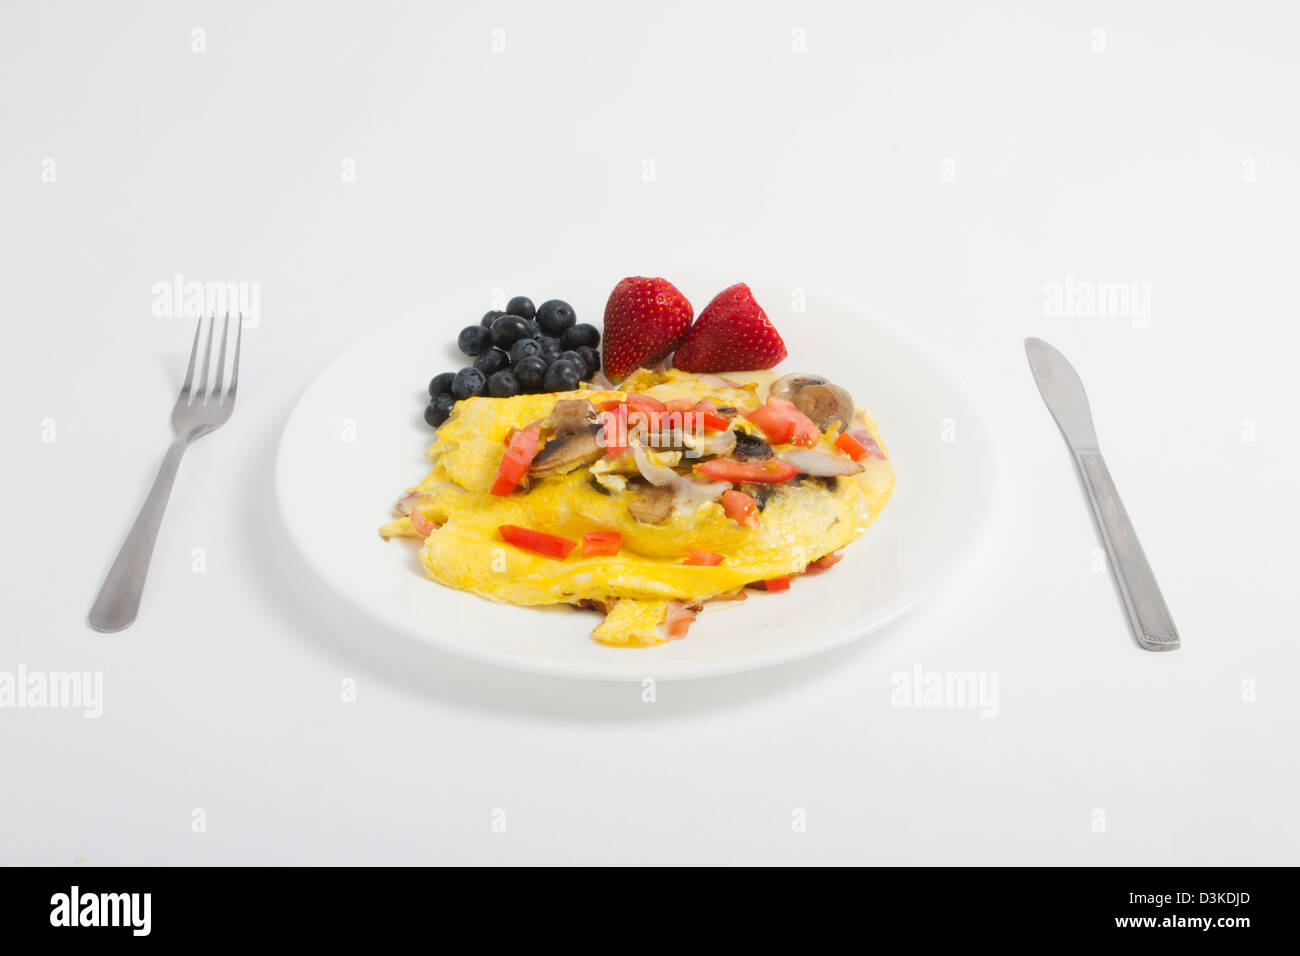 breakfast, egg, food, omlet, fruit, strawberry,vegetables Stock Photo